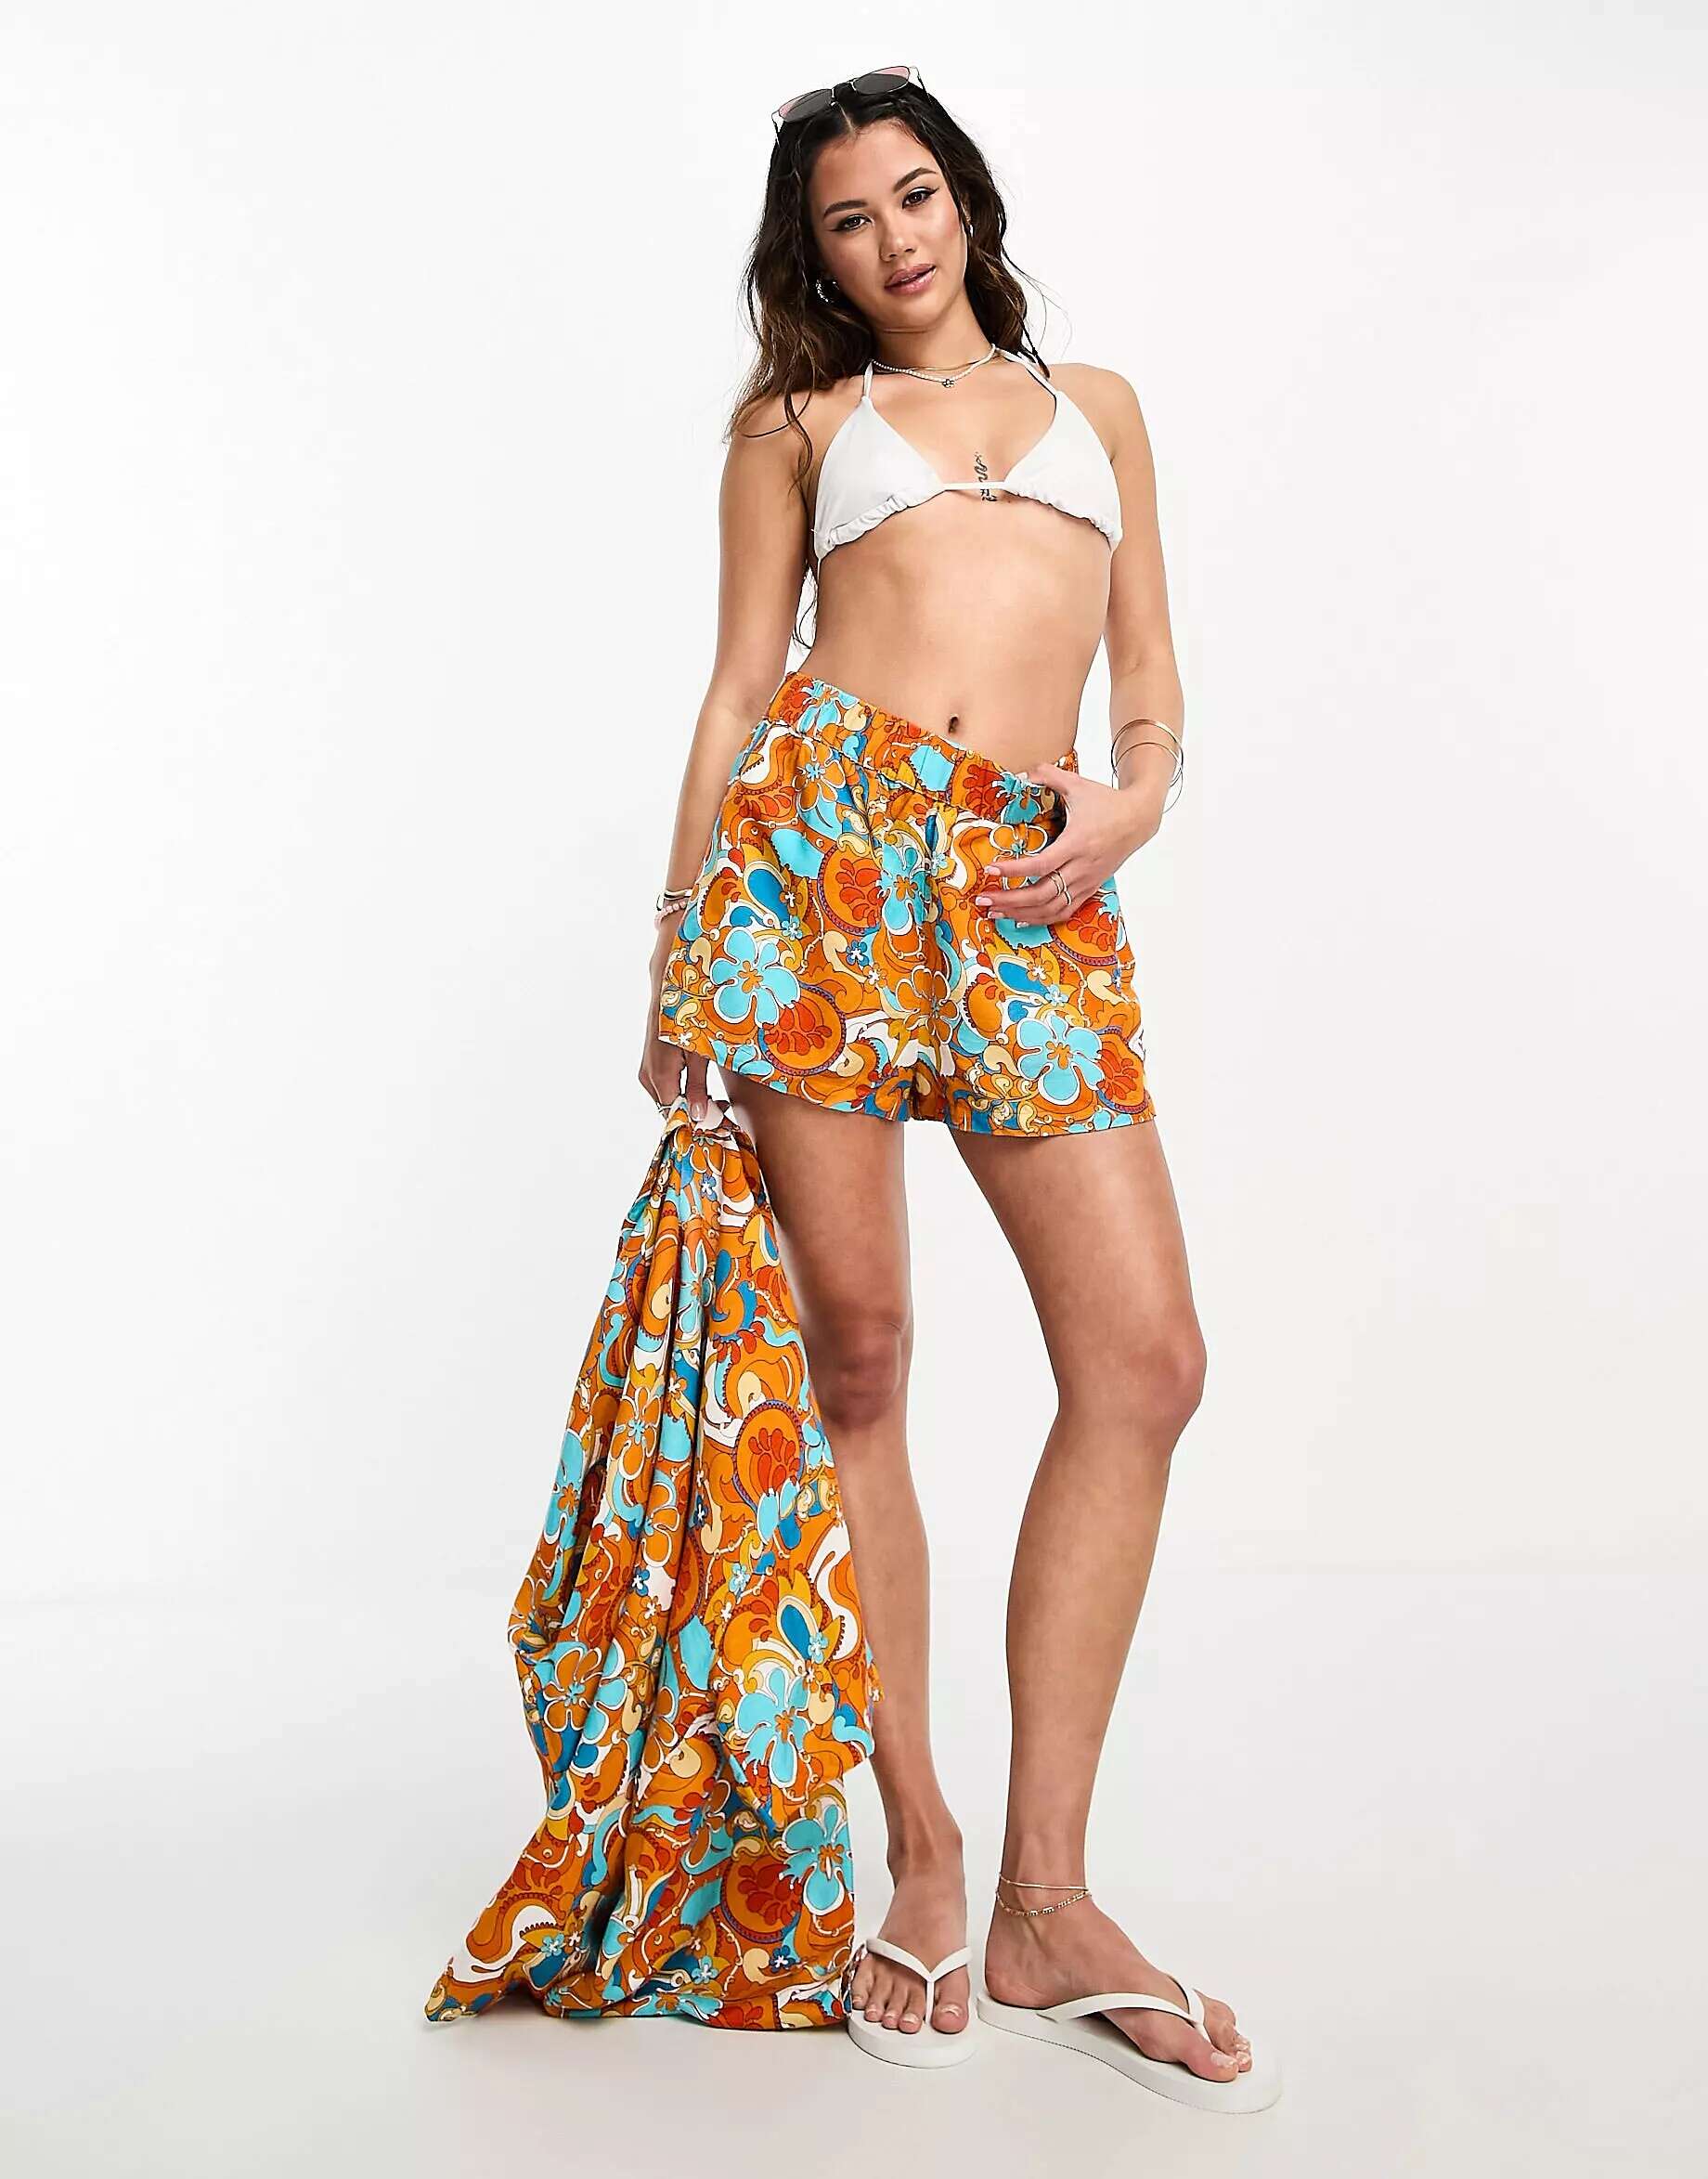 Комфортные пляжные шорты Kulani Kinis цвета манго Magic цена и фото